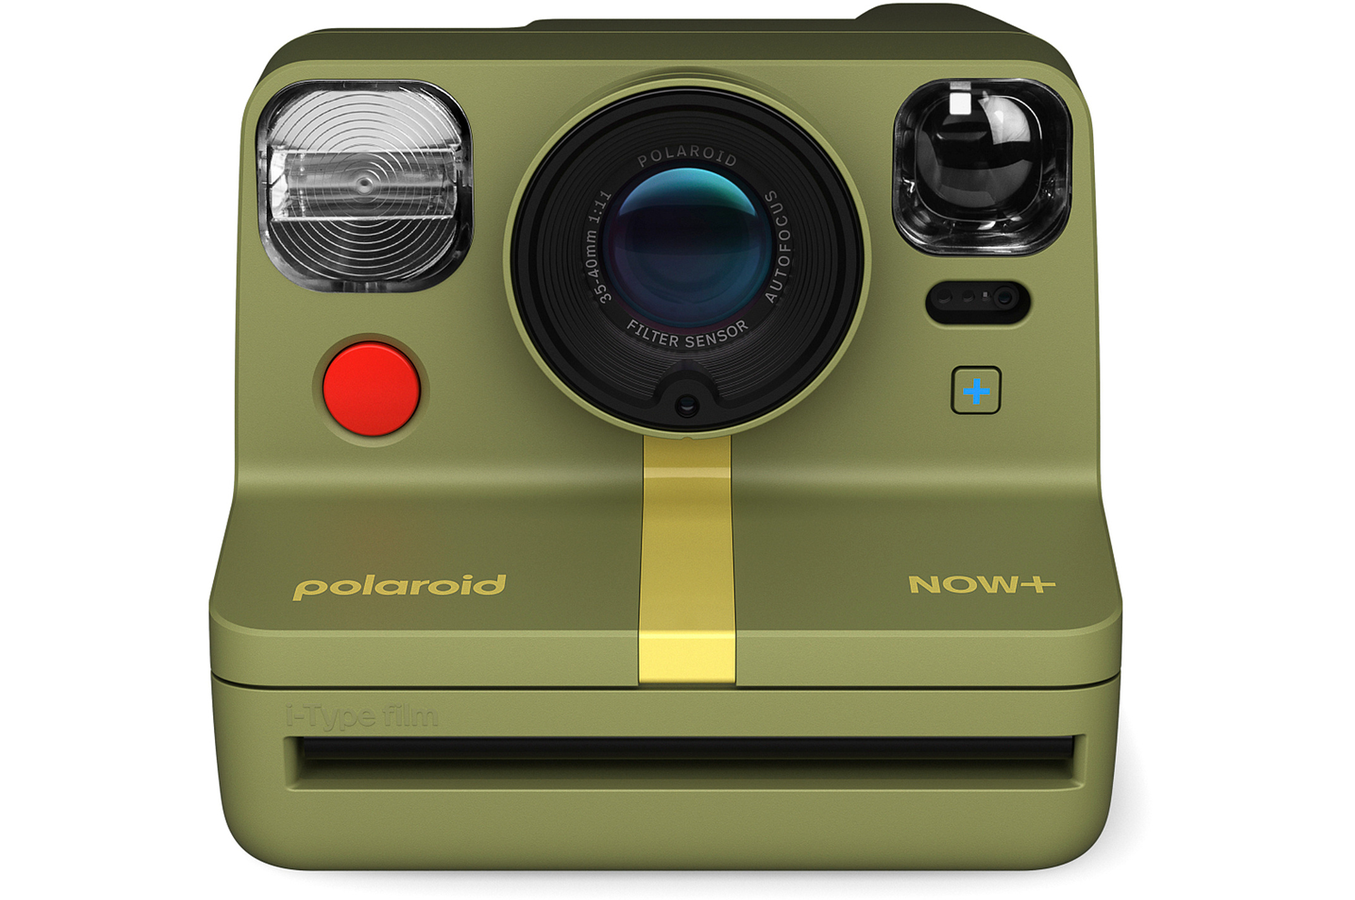 Lot de 5 films Polaroid 600 couleur pour appareil photo instantané